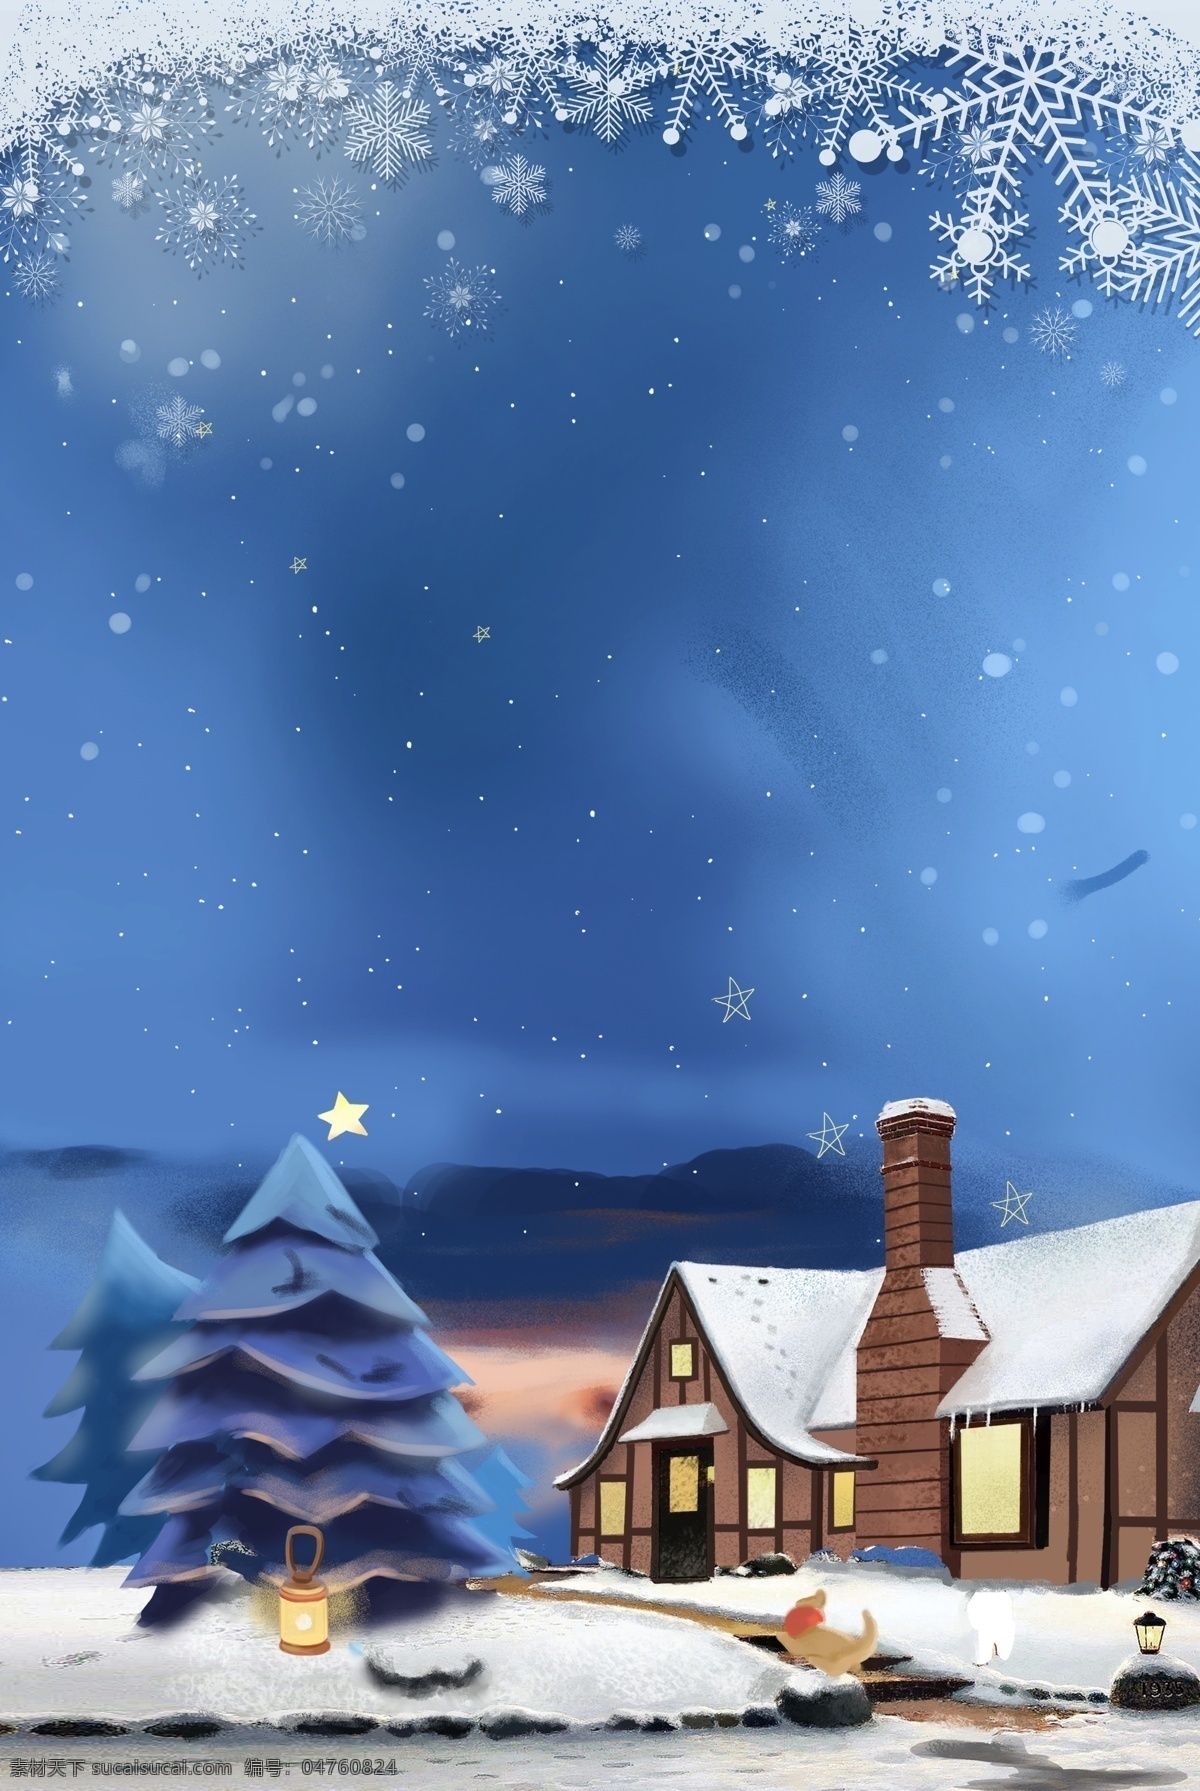 唯美 蓝色 冬至 节气 背景 雪花 圣诞树 psd背景 下雪 雪屋 冬至素材 大雪背景